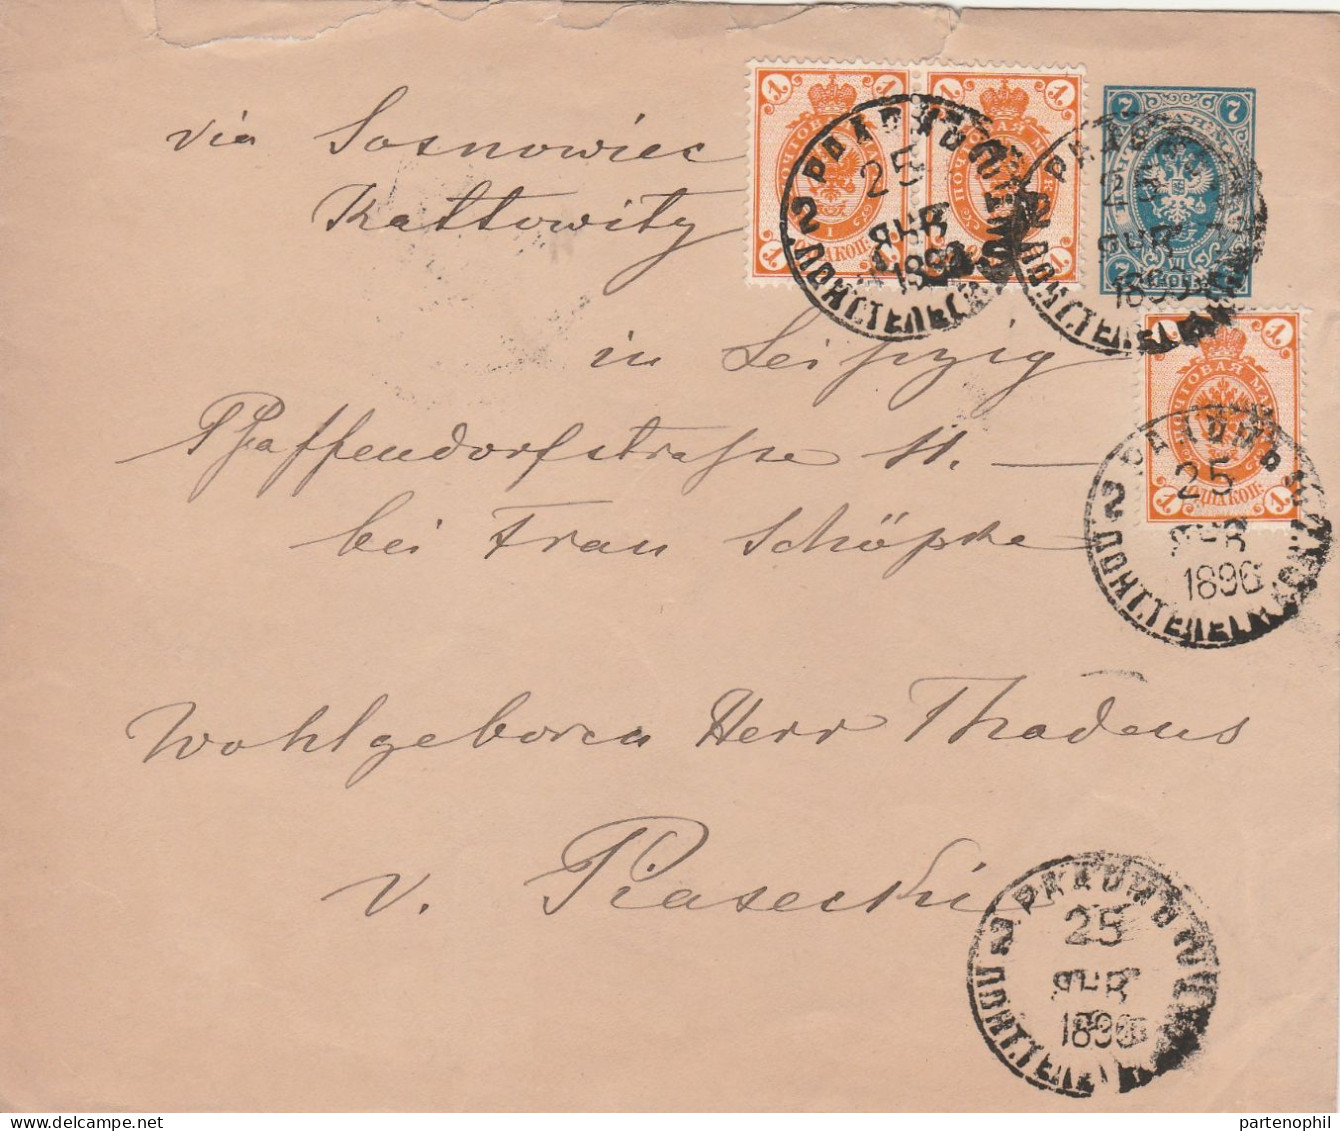 688 - Area Europea - Oltremare 1895/1950 - Insieme di 28 tra lettere e cartoline con interessanti affrancature, notate a